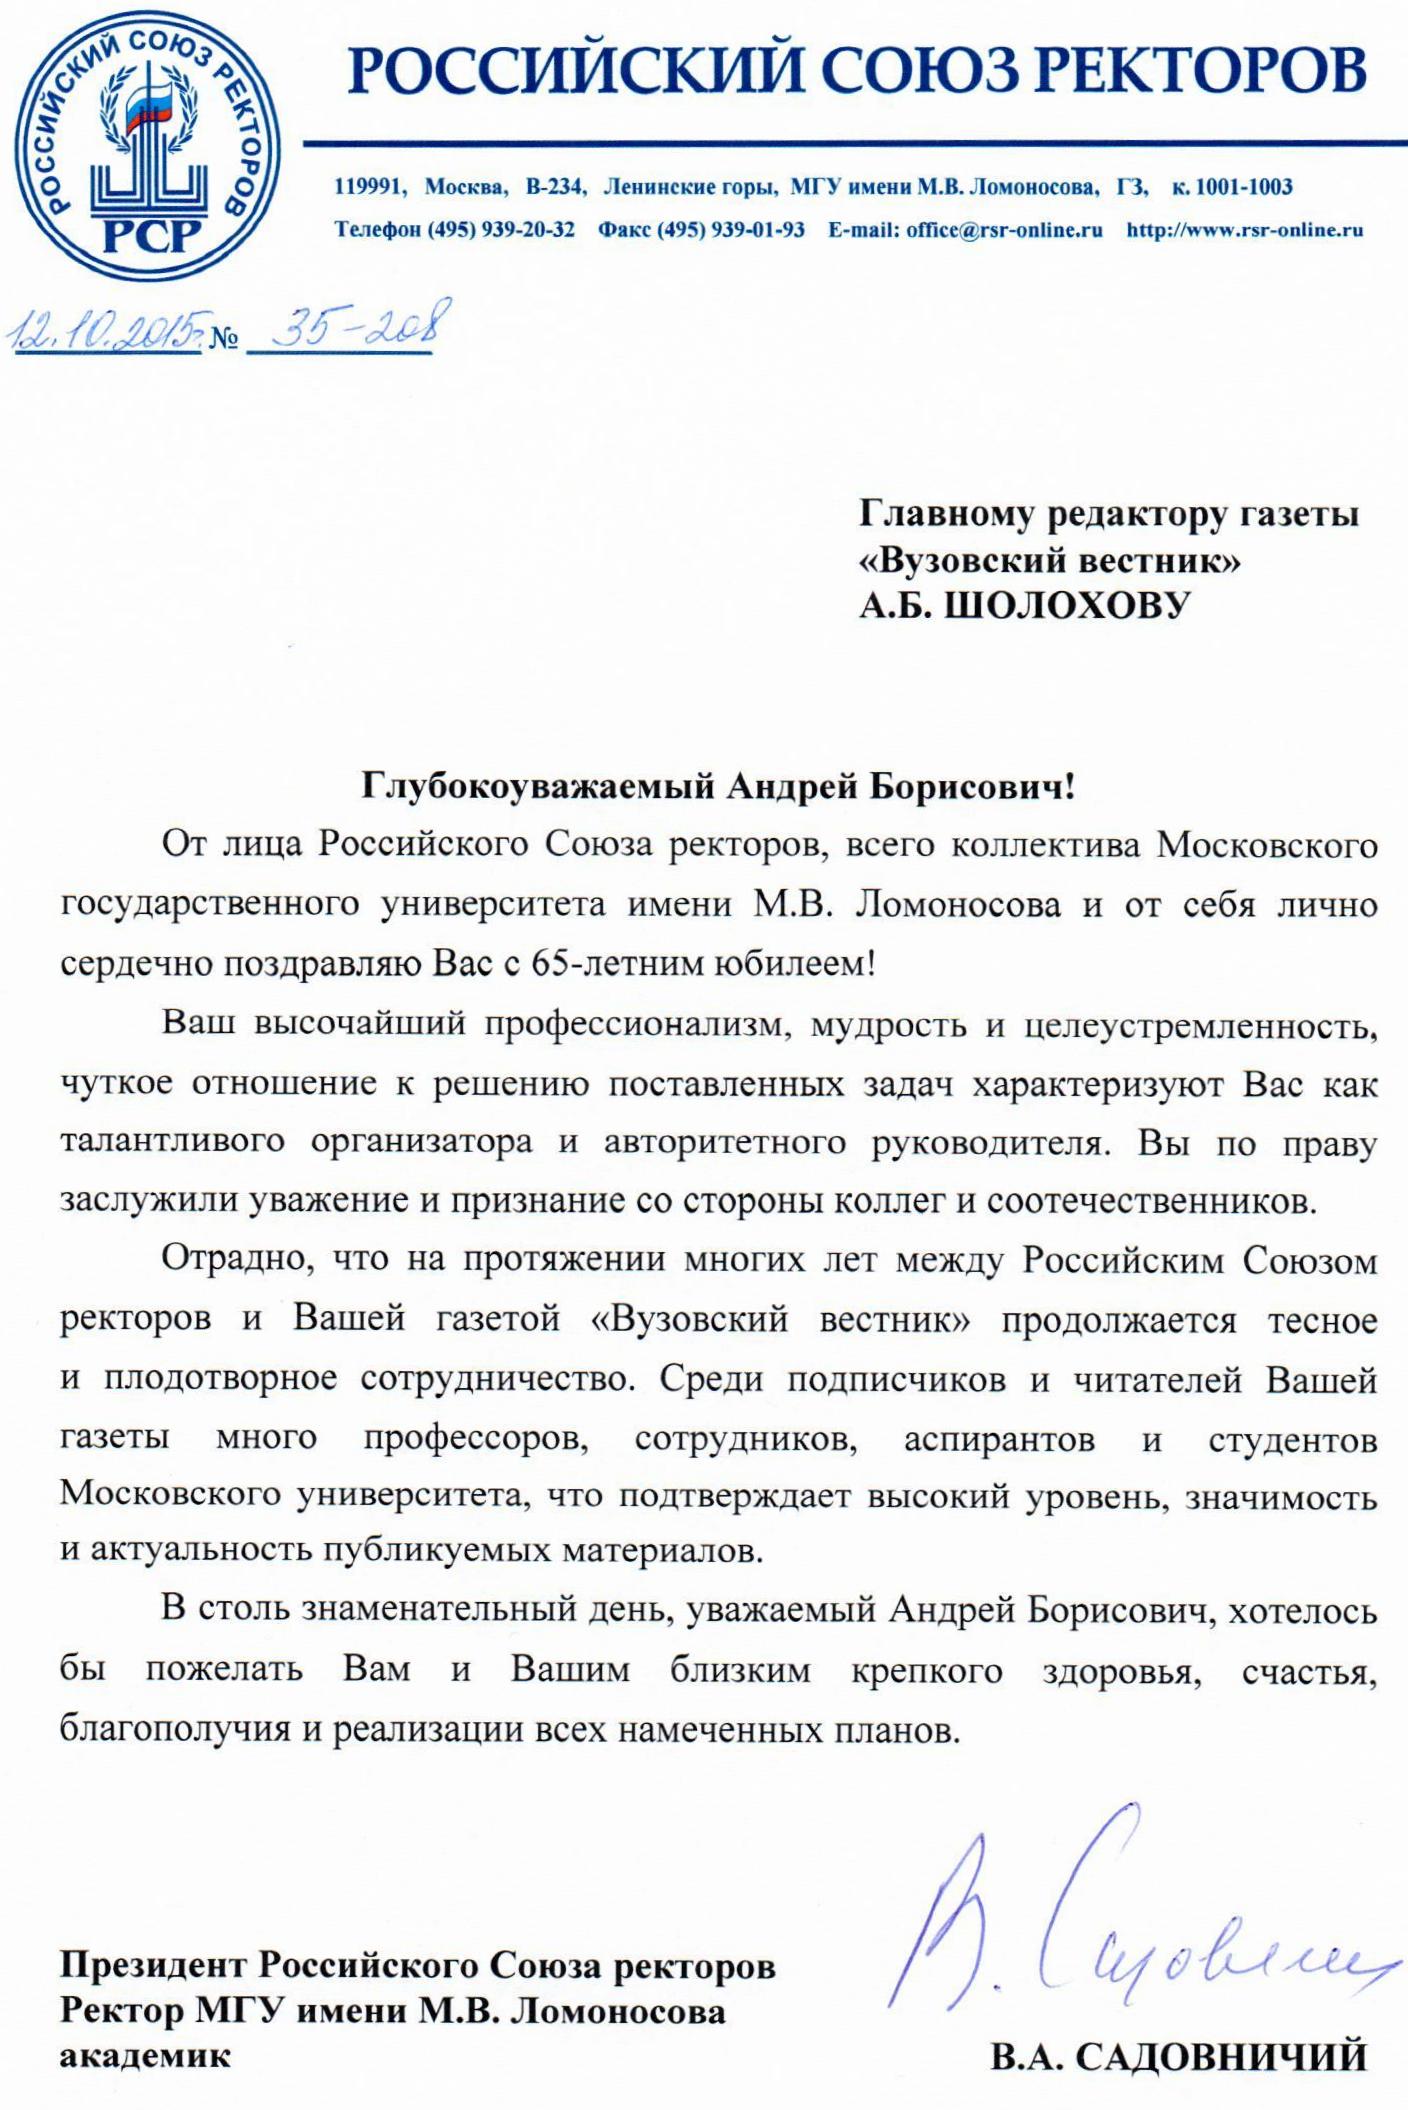 Кравченко поздравил «Парламентскую газету» с днем рождения